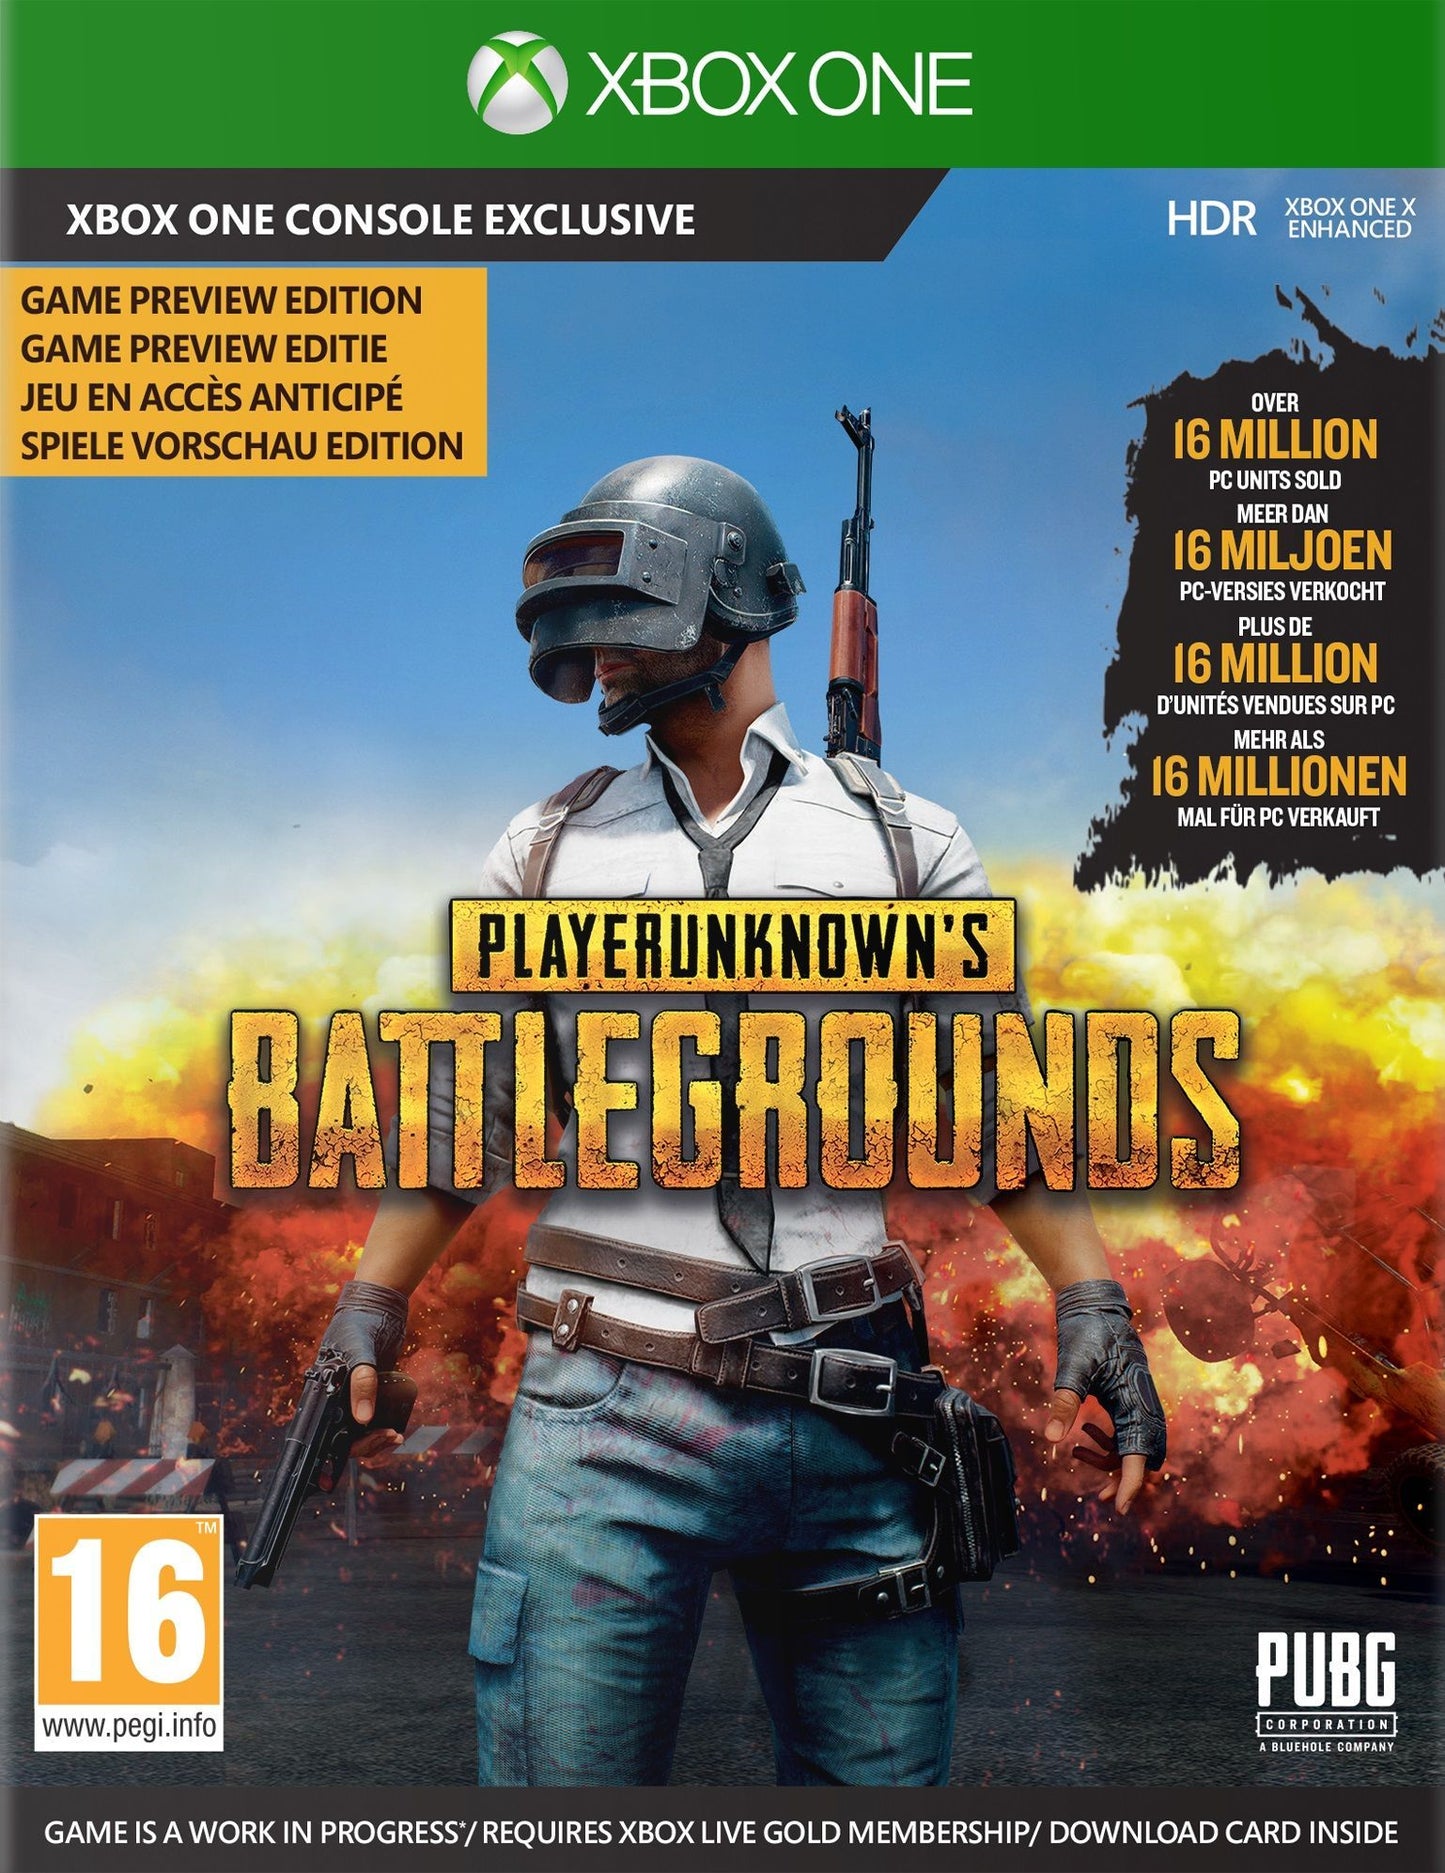 Playernknown's Battleground - PUBG - (CODE DIGITAL)